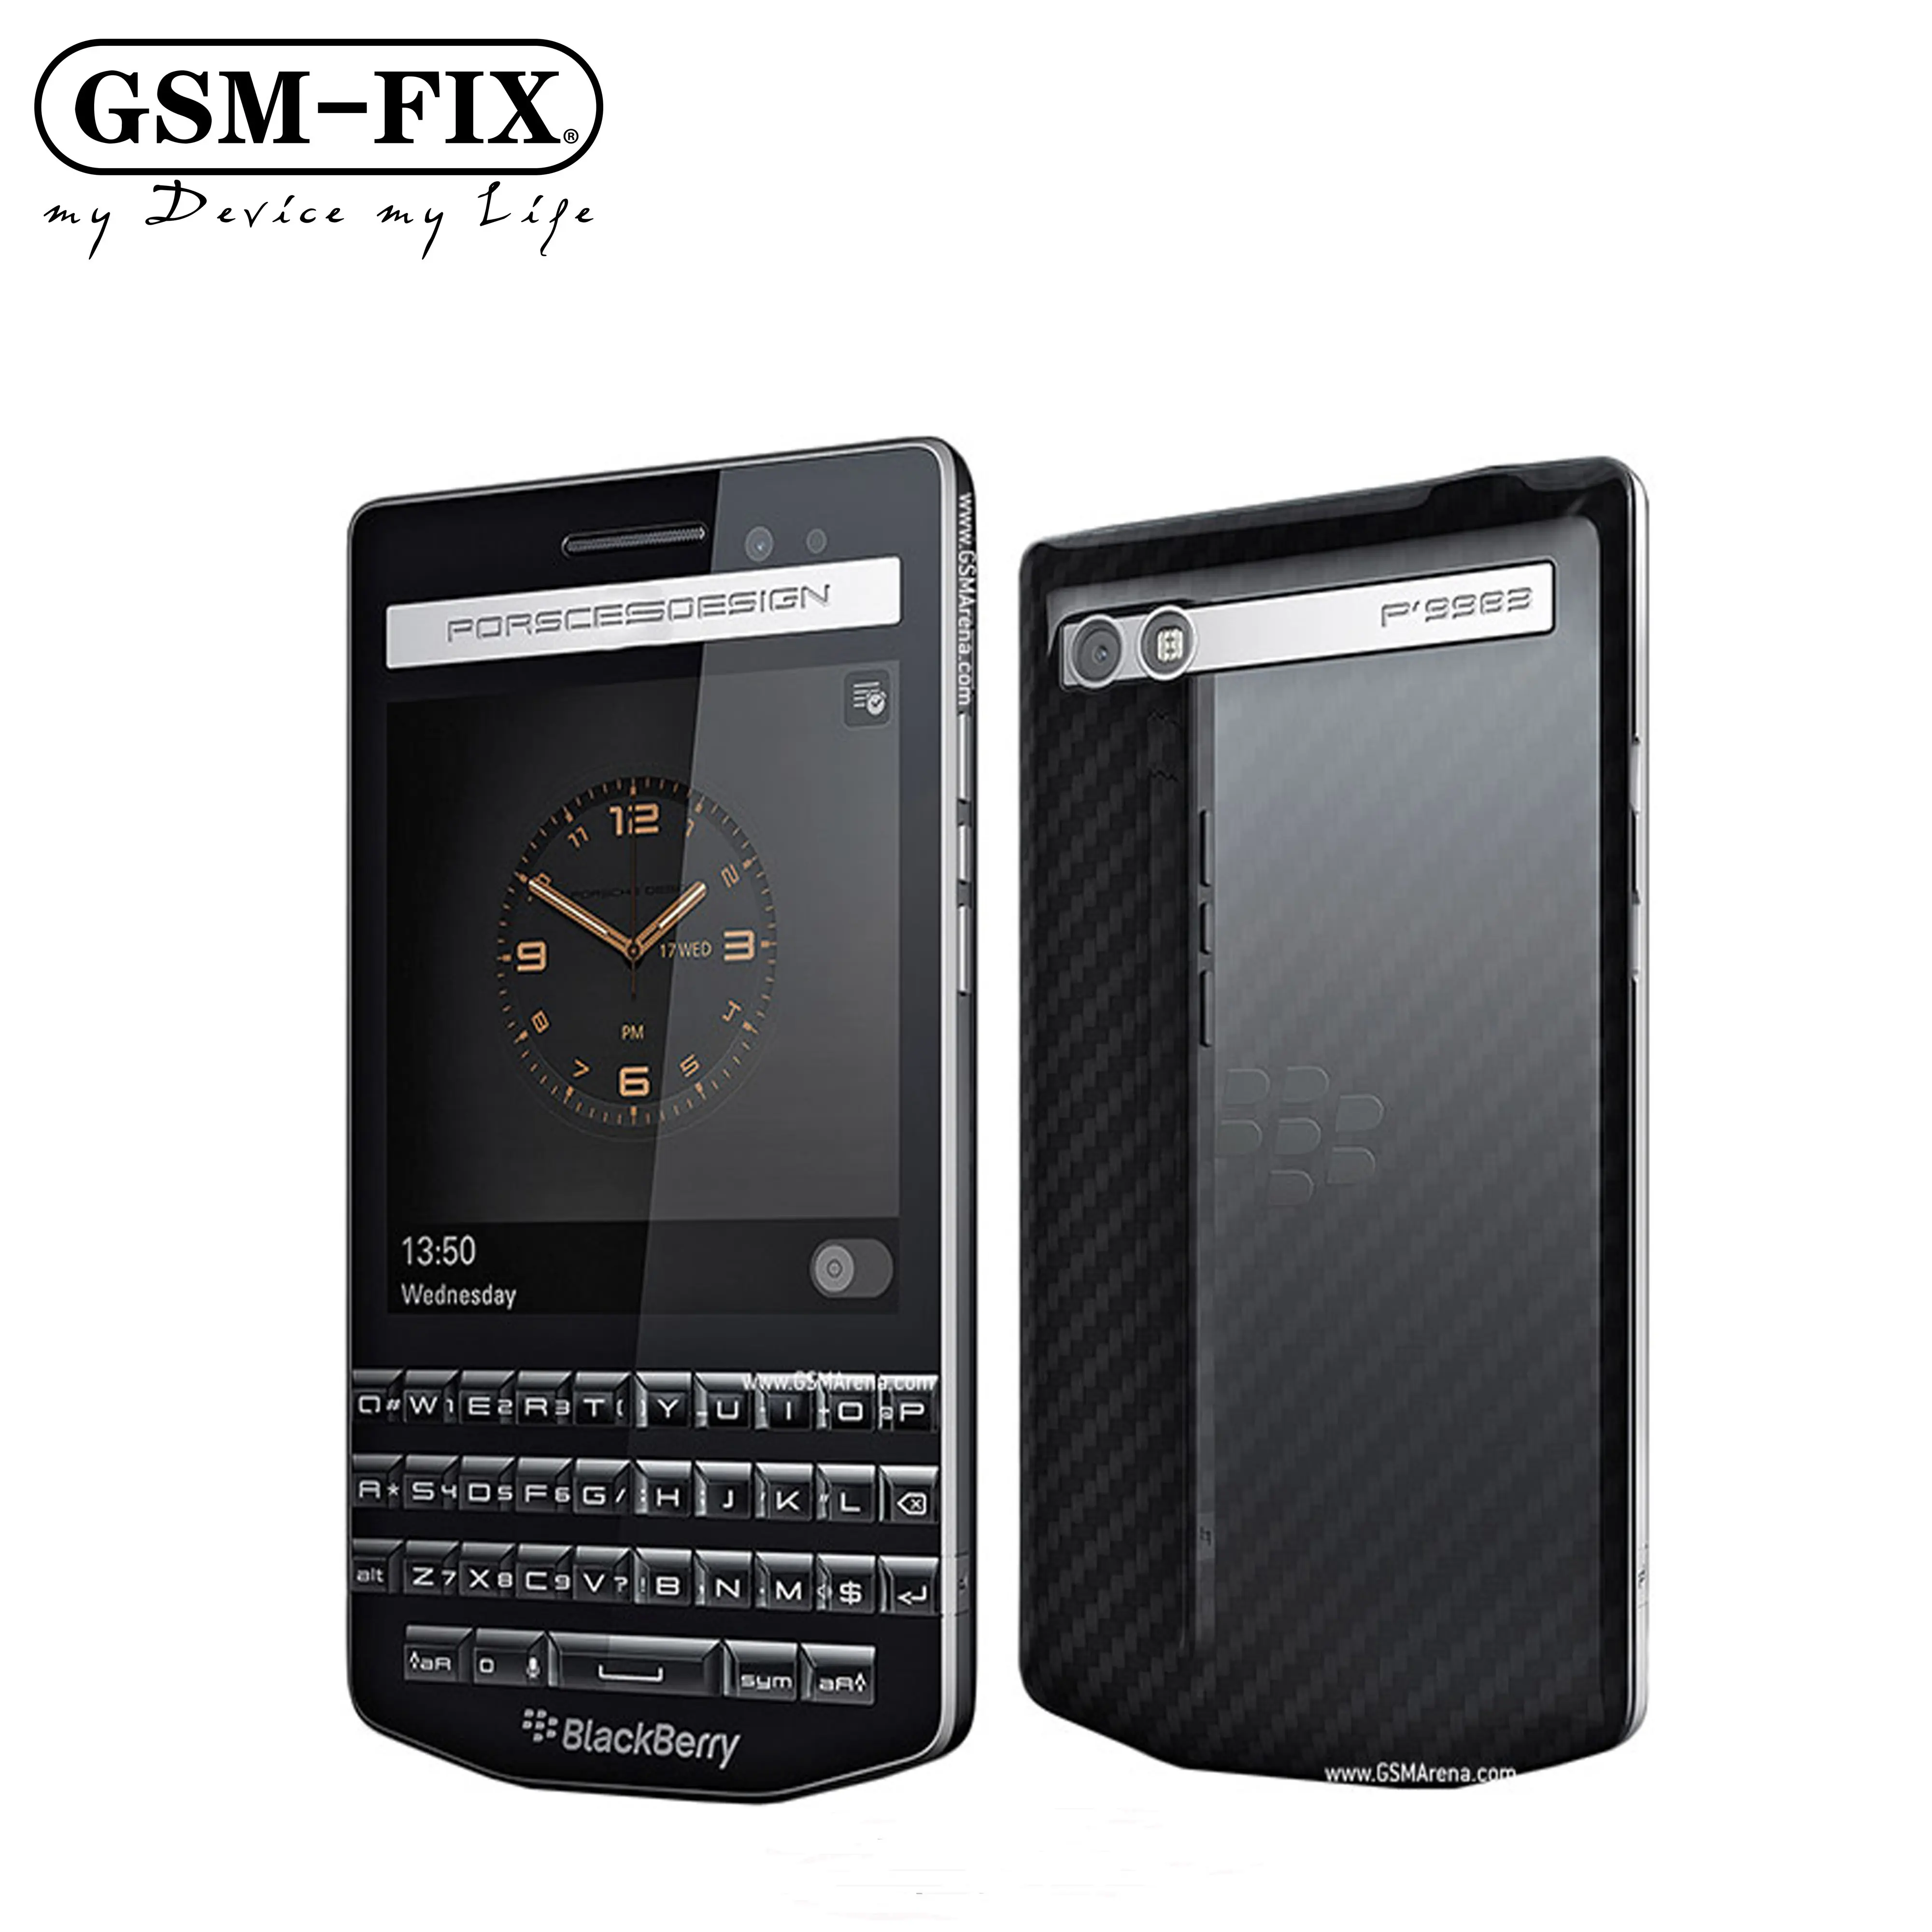 GSM-FIX для BlackBerry Porsche дизайн P'9983 4G LTE мобильный телефон с 3,1 дюймовым IPS ЖК-дисплеем Smart Snapdragon S4 Pro Двухъядерный сотовый телефон